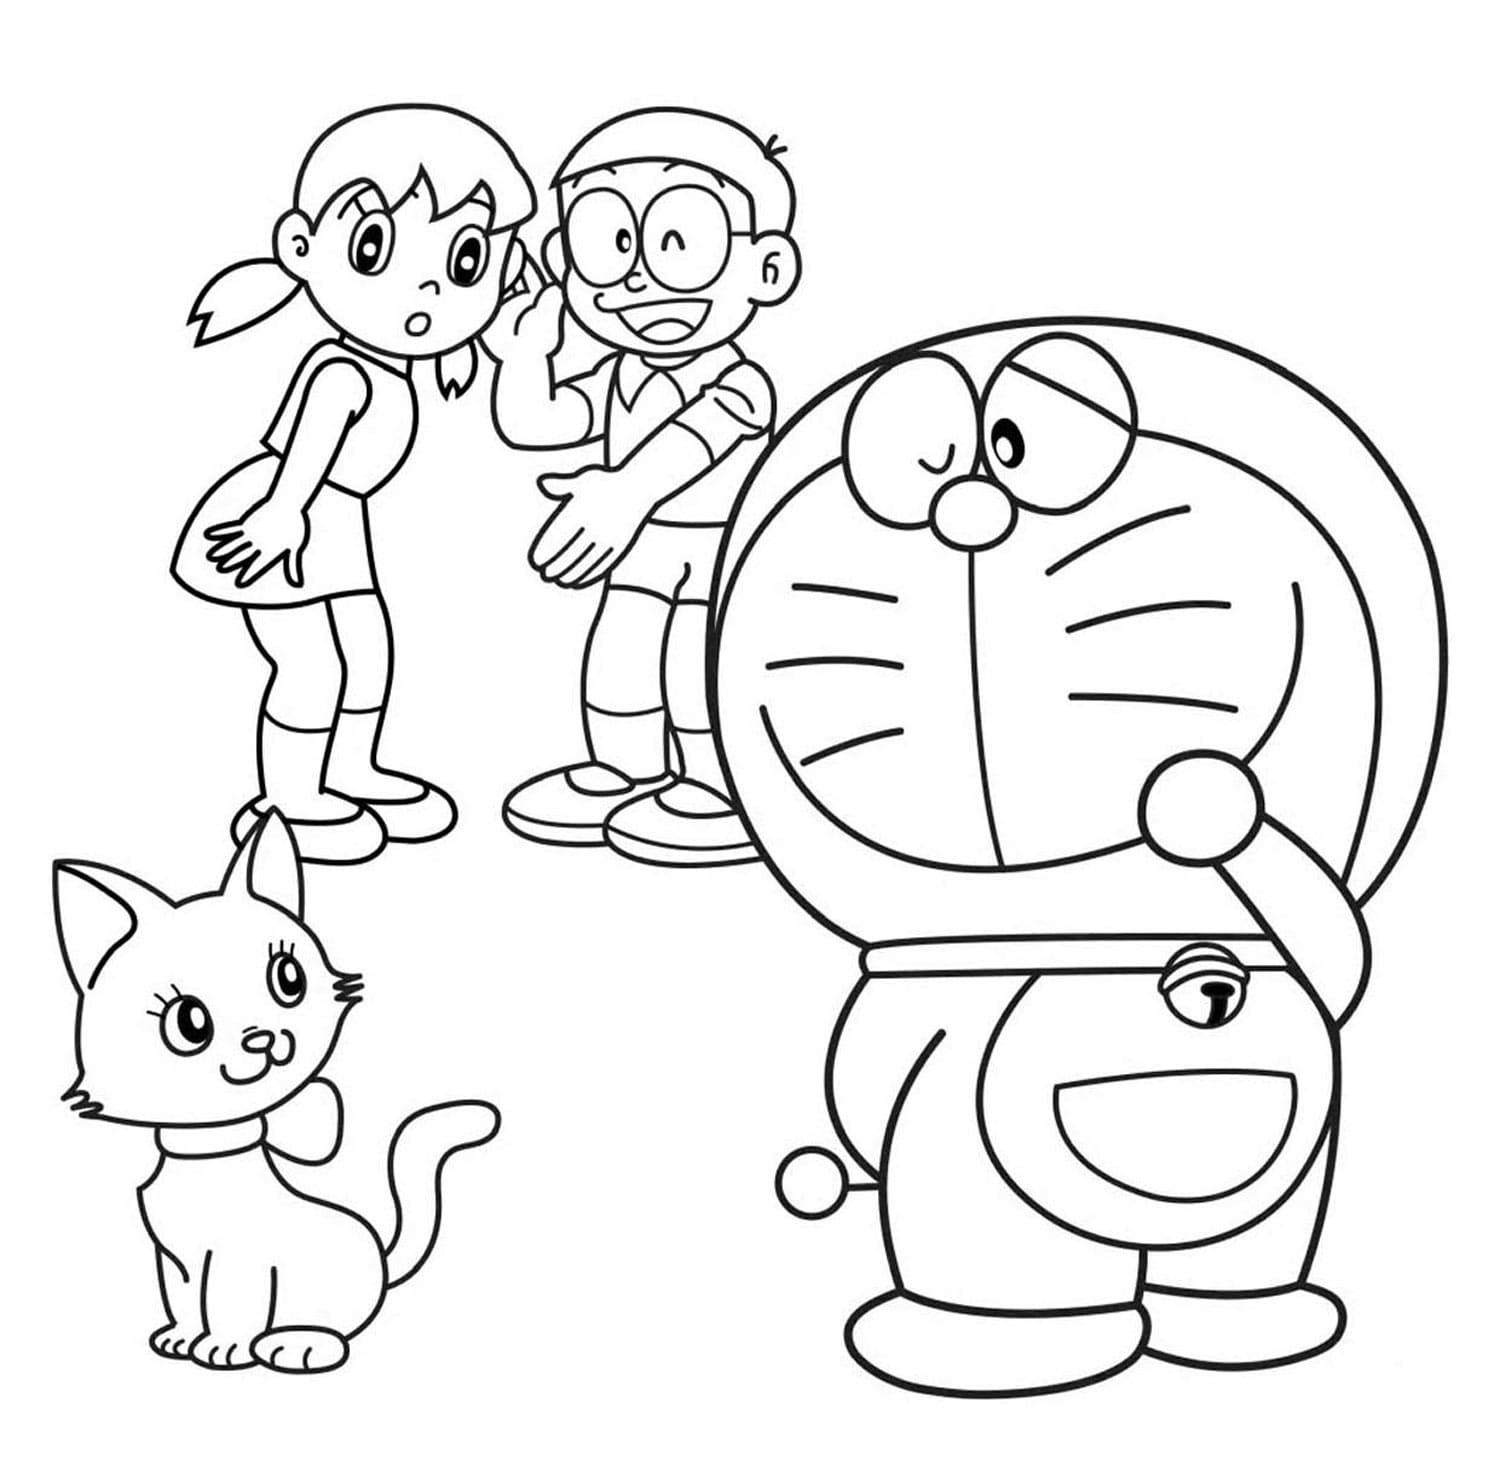 Bạn đang tìm kiếm trang tô màu Doraemon mới nhất? Hãy xem những trang tô màu Doraemon đáng yêu nhất tại đây! Bạn có thể tải xuống và in ra để tô màu cho mình một bộ sưu tập vô cùng đặc biệt. Bấm vào hình để tìm hiểu thêm.